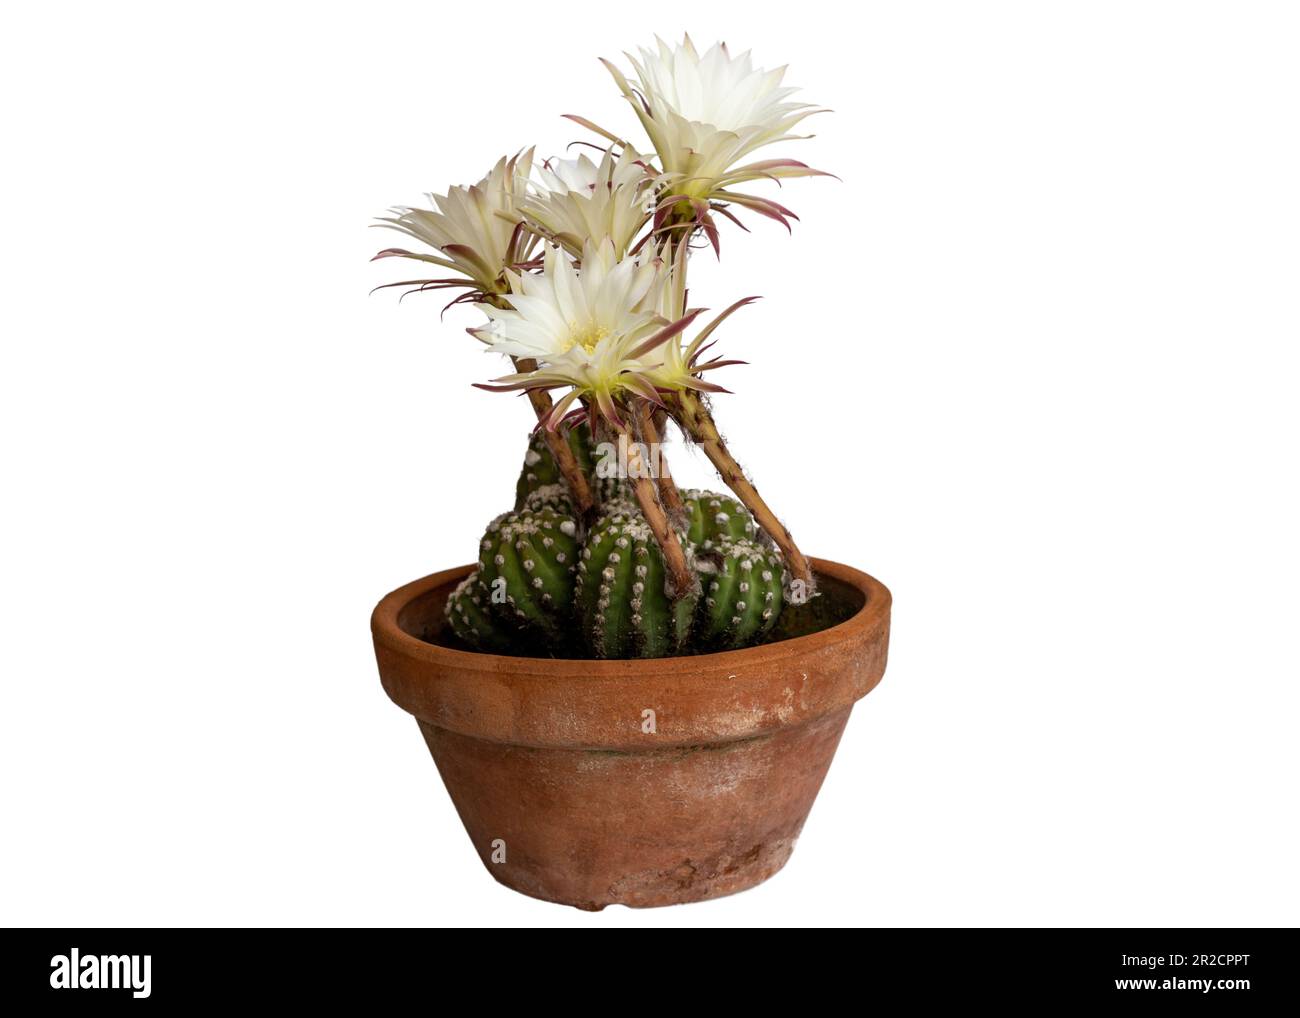 Gros plan d'une fleur de cactus isolée sur fond blanc Banque D'Images